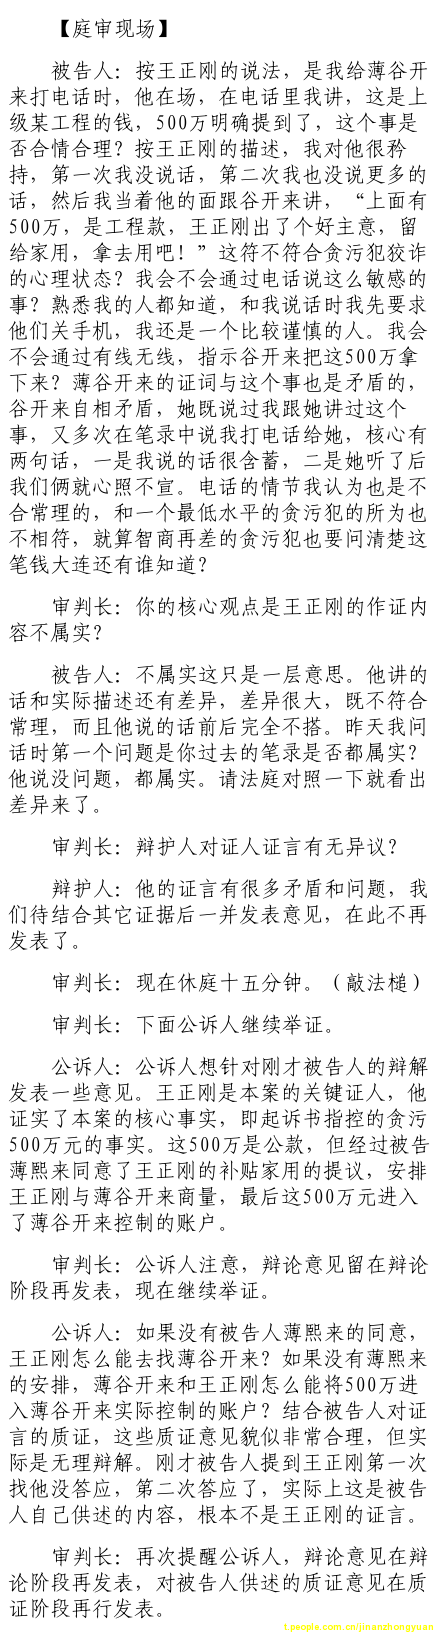 济南市中级法院官方微博公布的8月24日庭审现场记录（3）